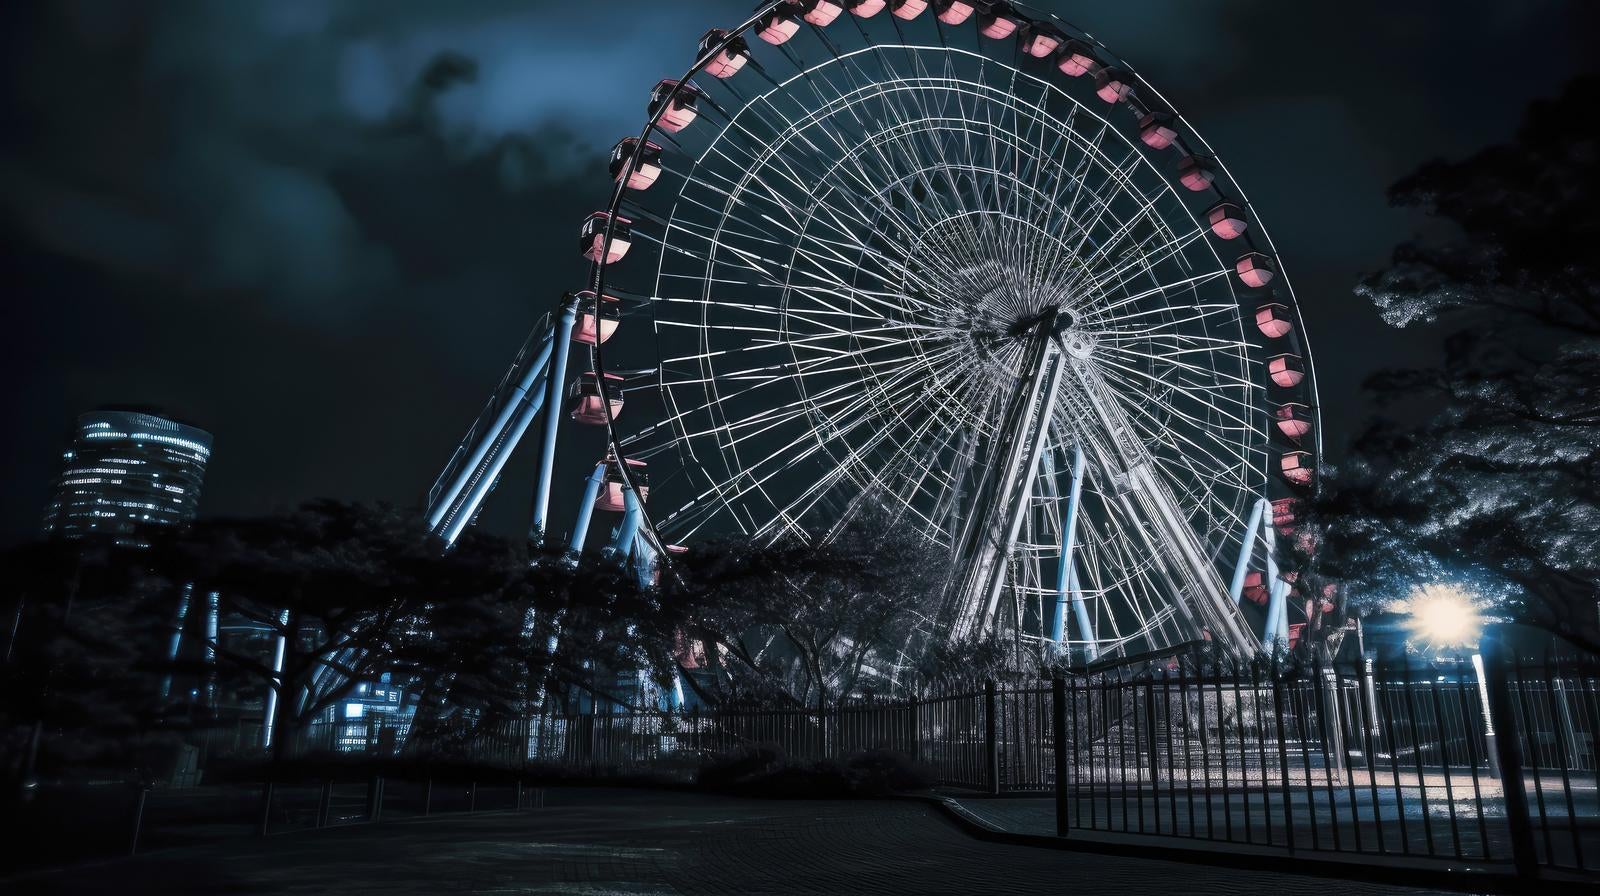 「深夜の遊園地、浮かび上がる不気味な観覧車」の写真